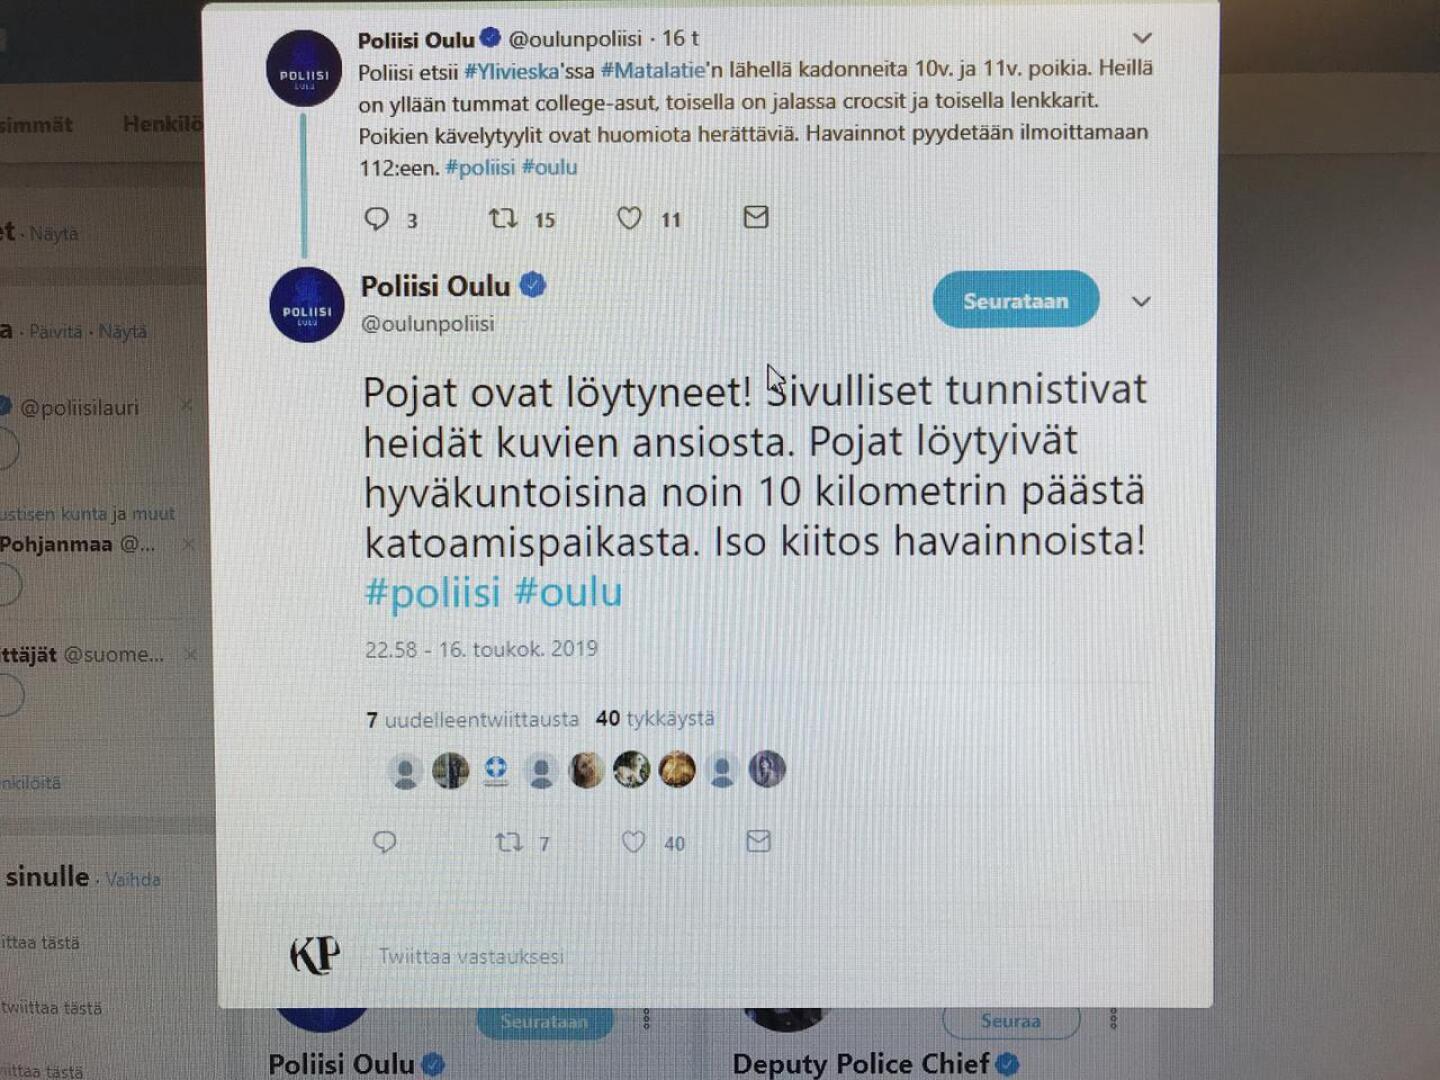 Oulun poliisi käynnisti ylivieskalaispoikien etsinnän poikkeuksellisesti sosiaalisen median avulla. Kuvassa poliisin Twitter-julkaisu.